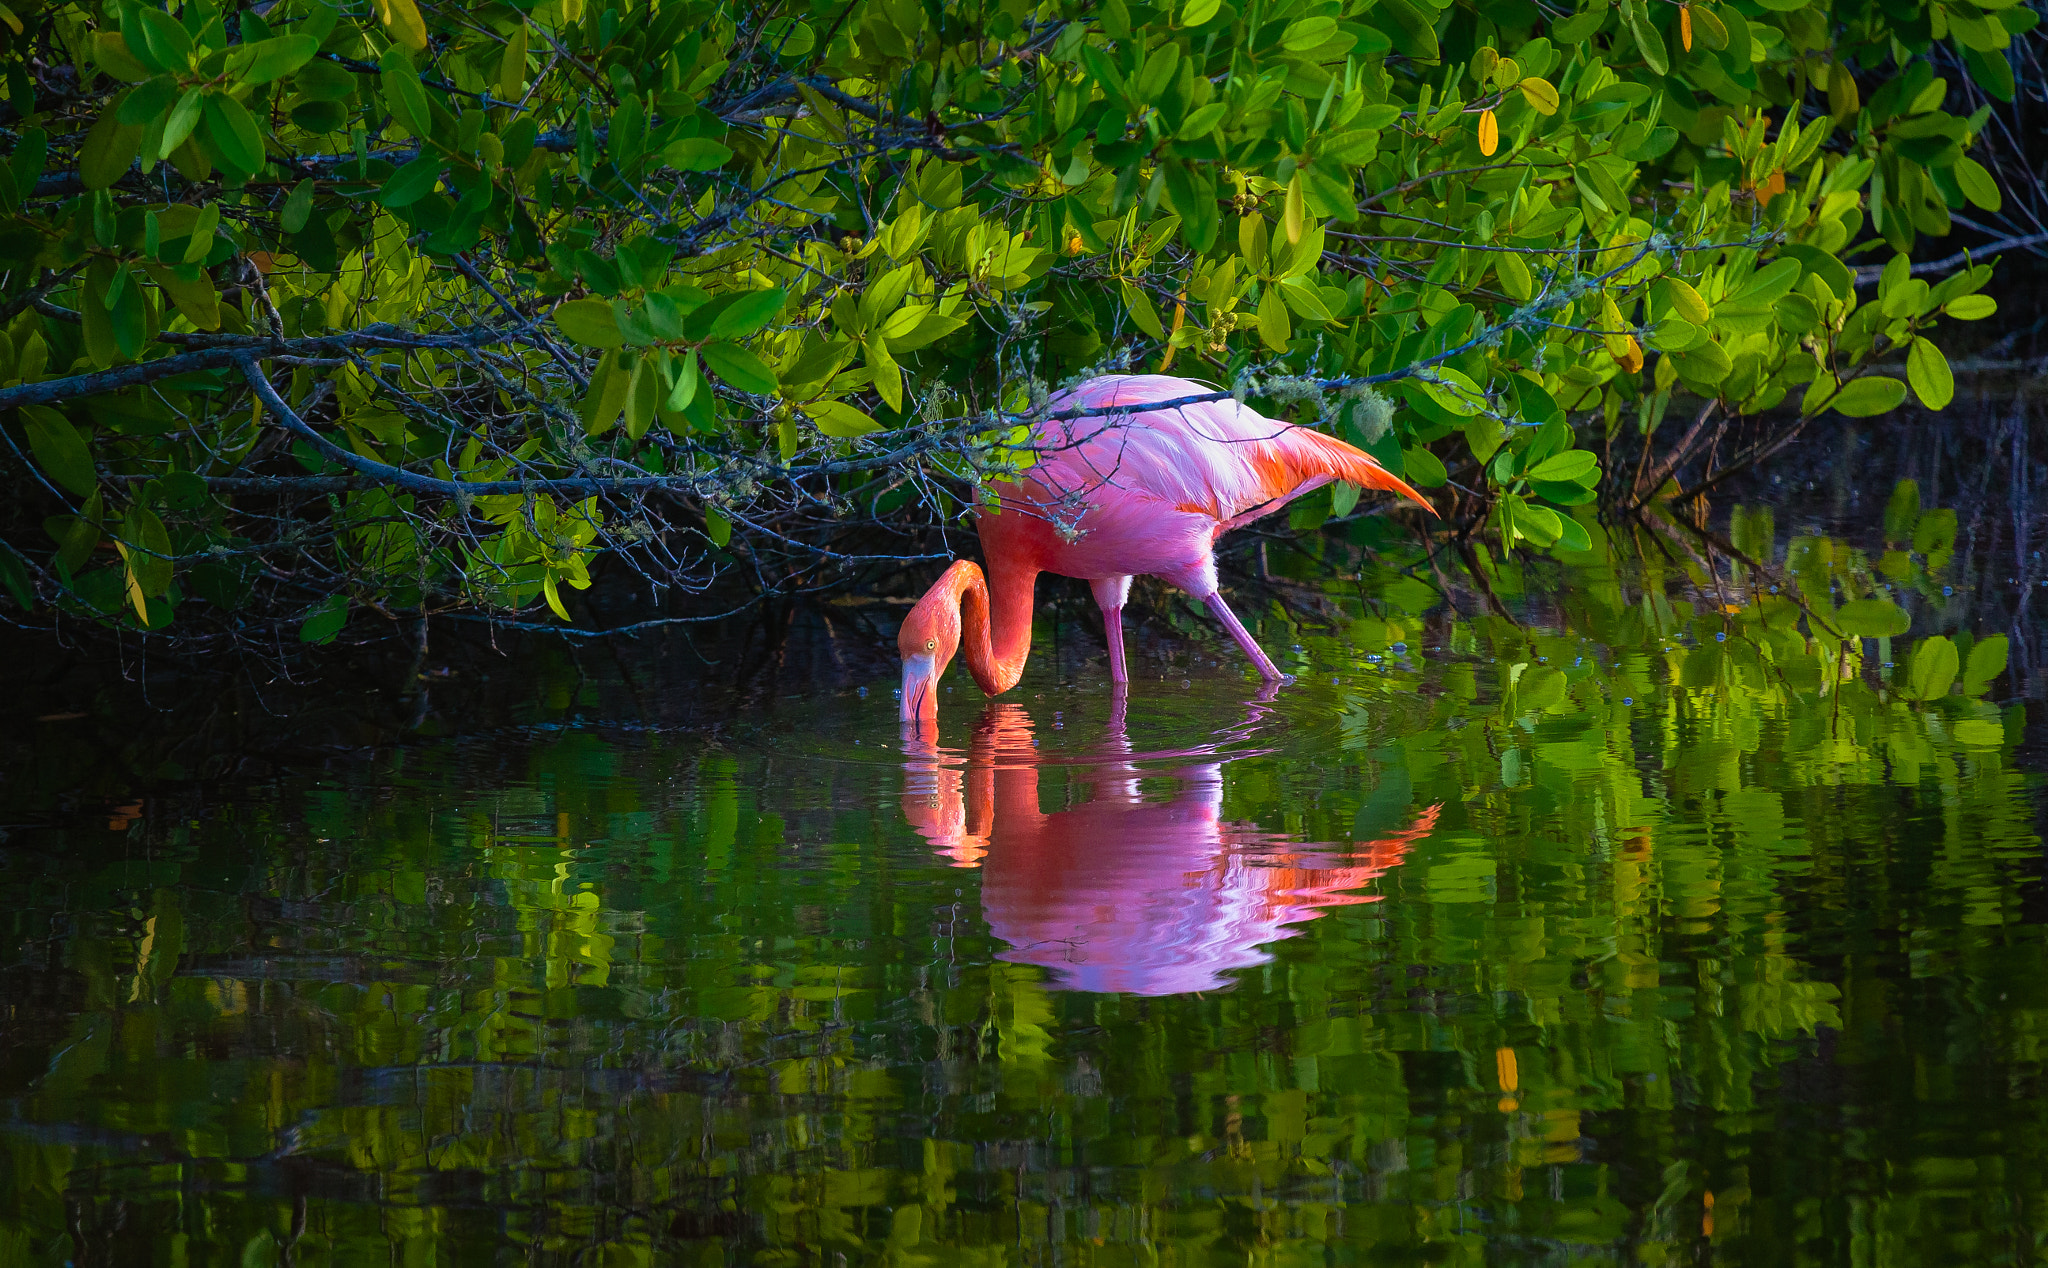 Canon EOS 5D Mark II sample photo. Galapagos flamingo photography